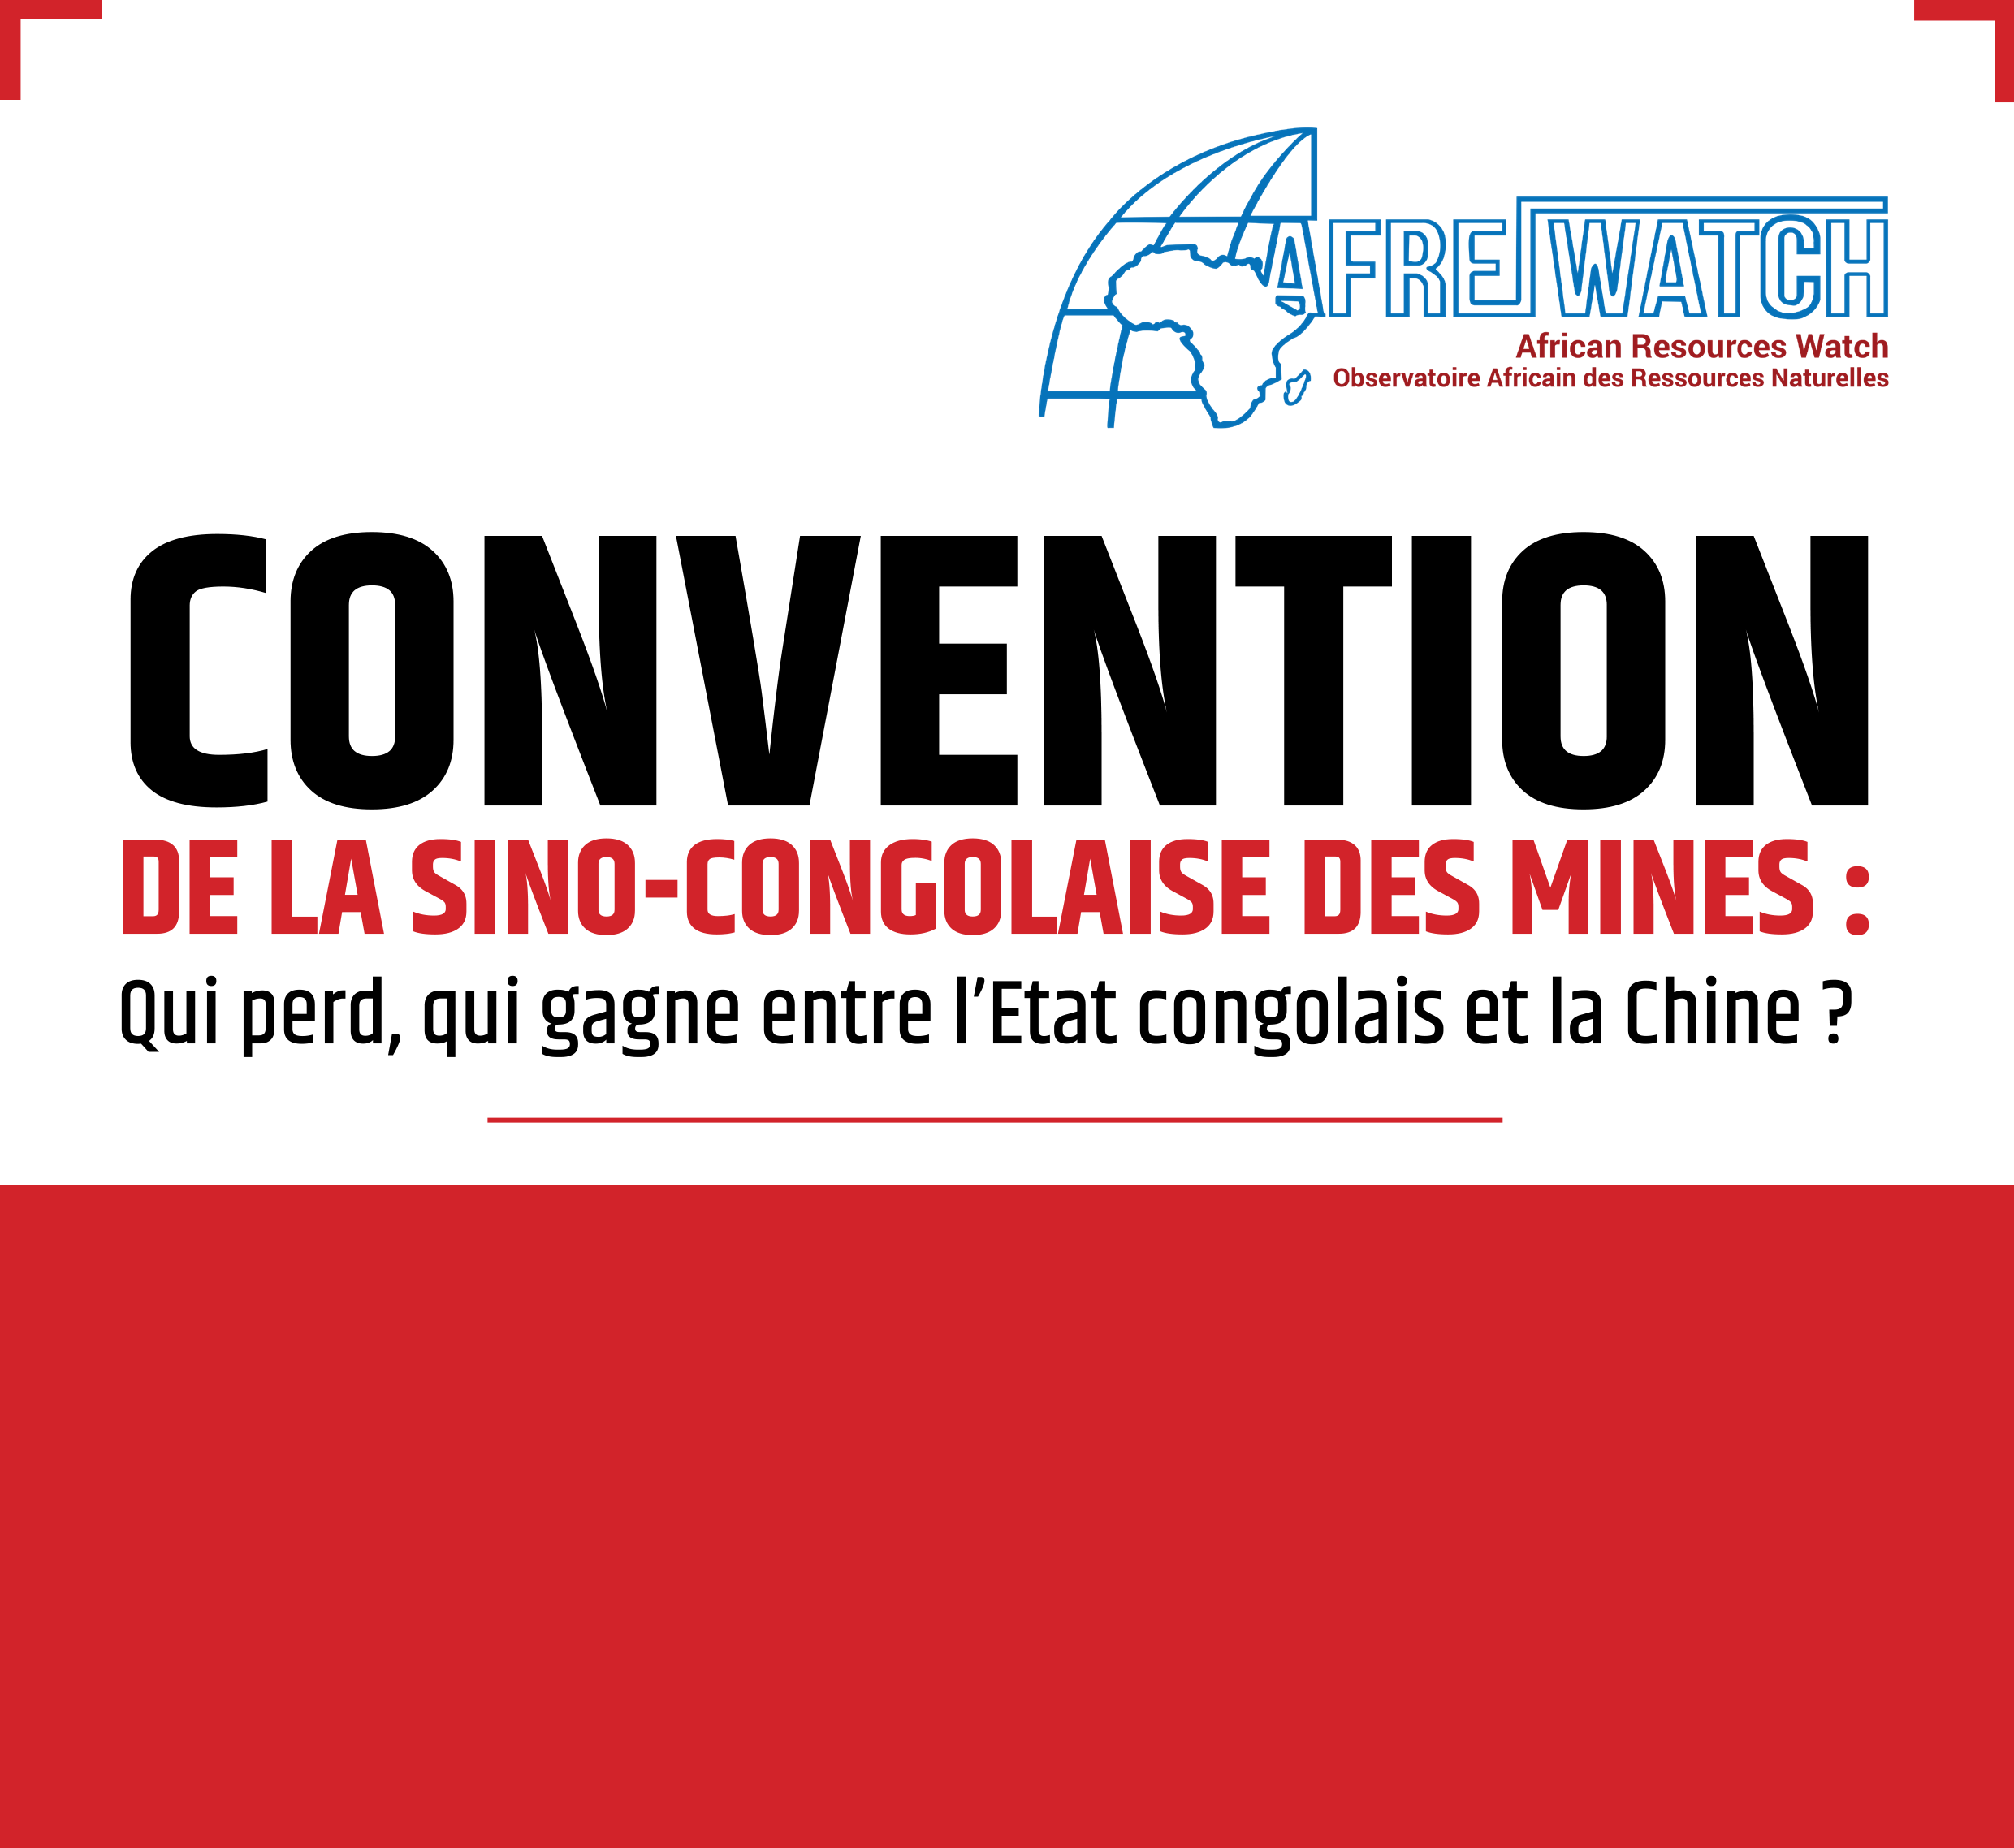 CONVENTION DE LA SINO-CONGOLAISE DES MINES : Qui perd, qui gagne entre l’Etat congolais et la Chine ?